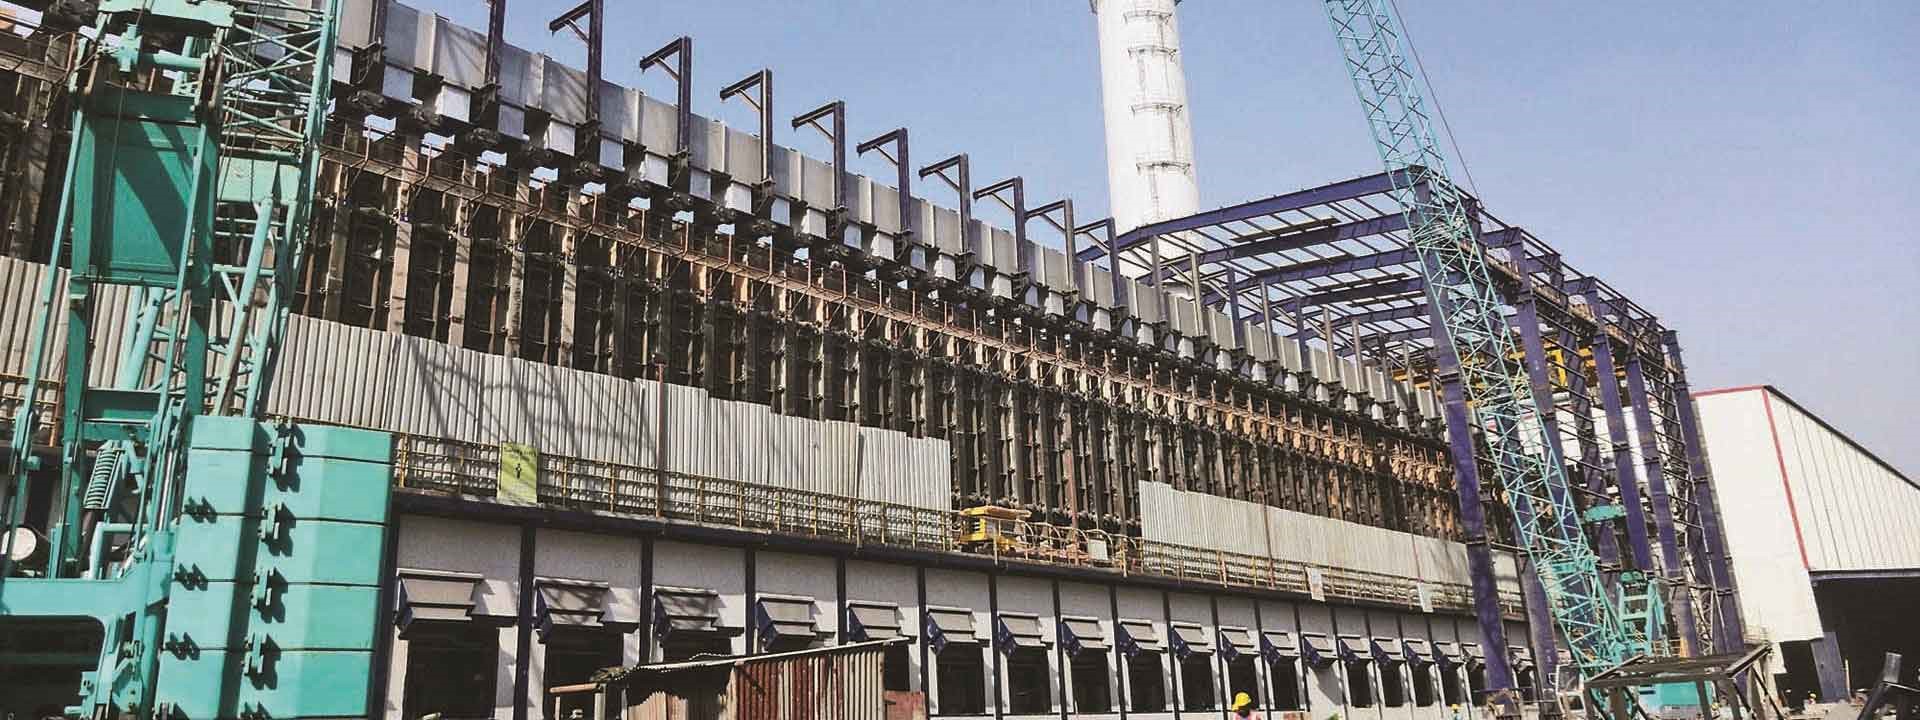 Coke Oven Plant in Odisha- L&T Construction